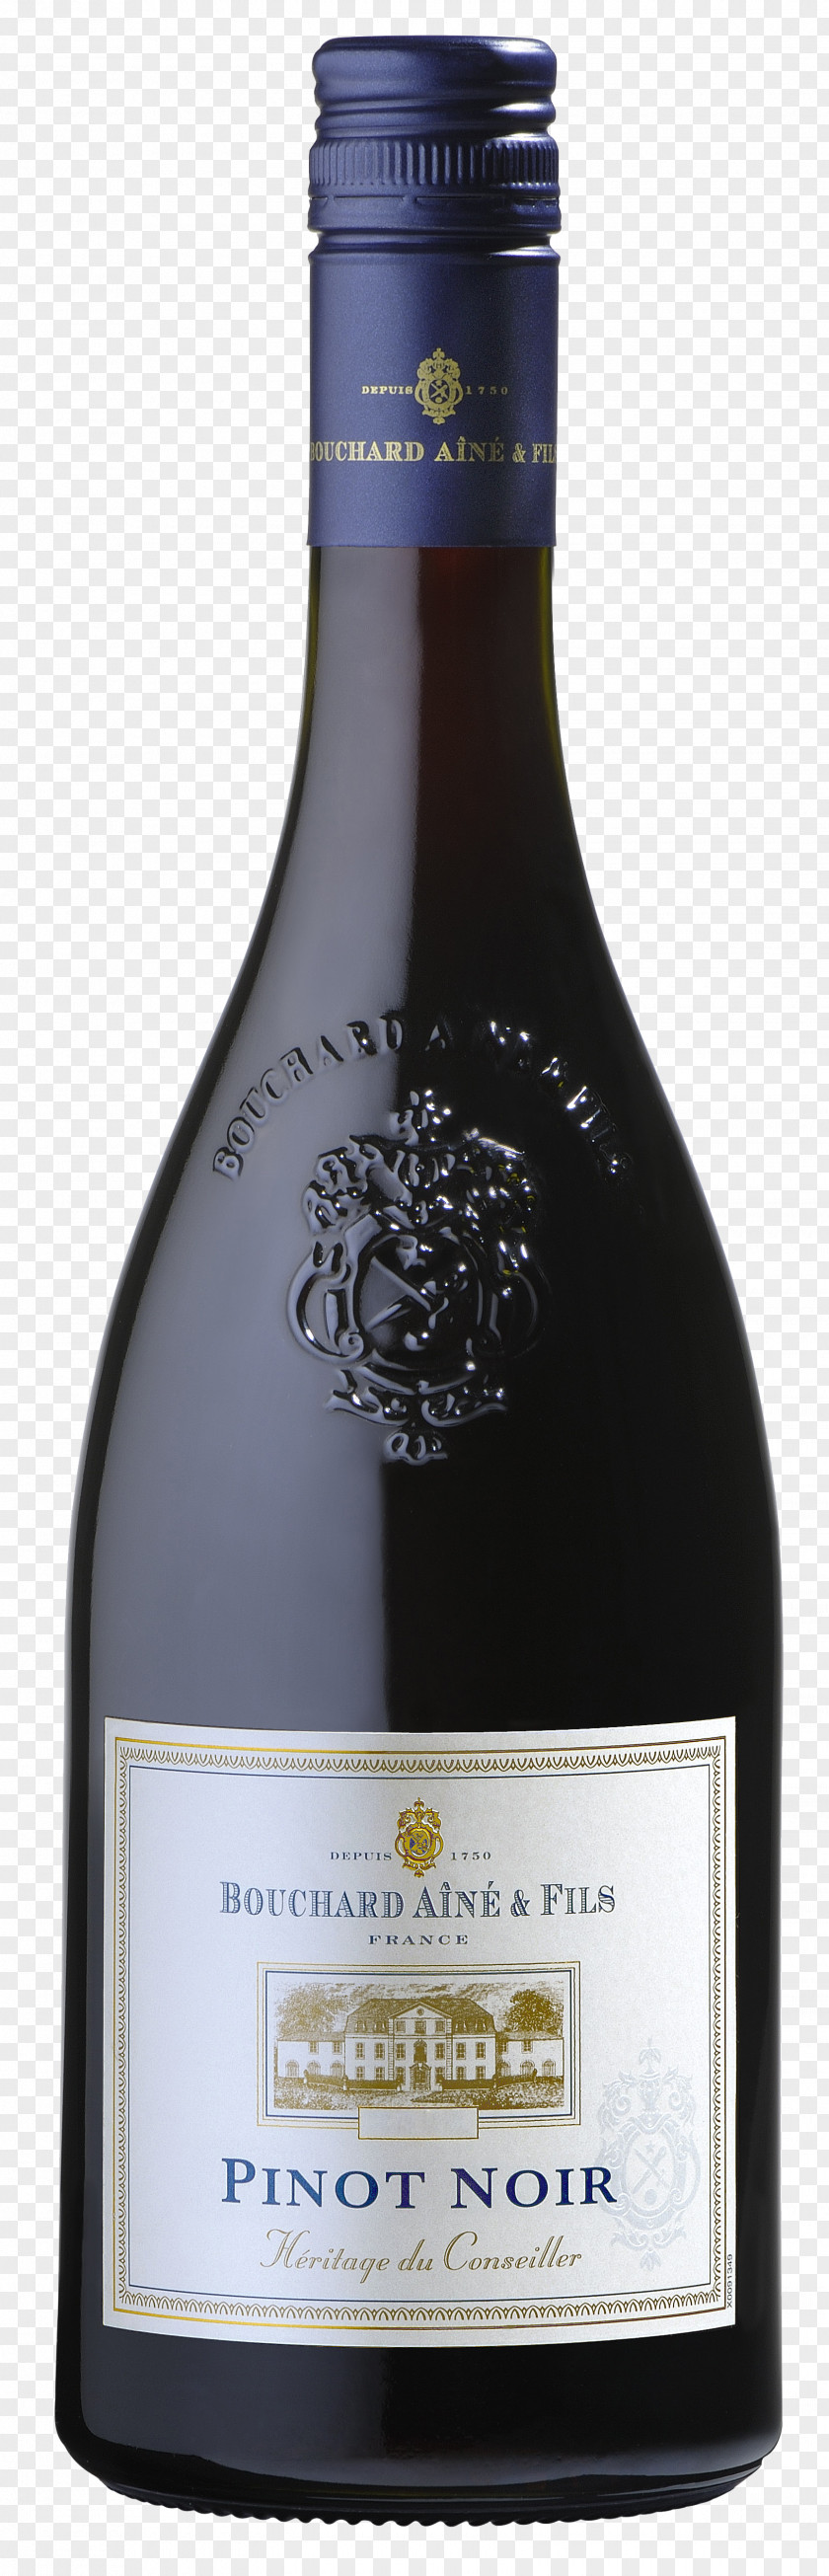 Shelf Talker Vin De Pays Pinot Noir Wine Liqueur Cabernet Sauvignon PNG